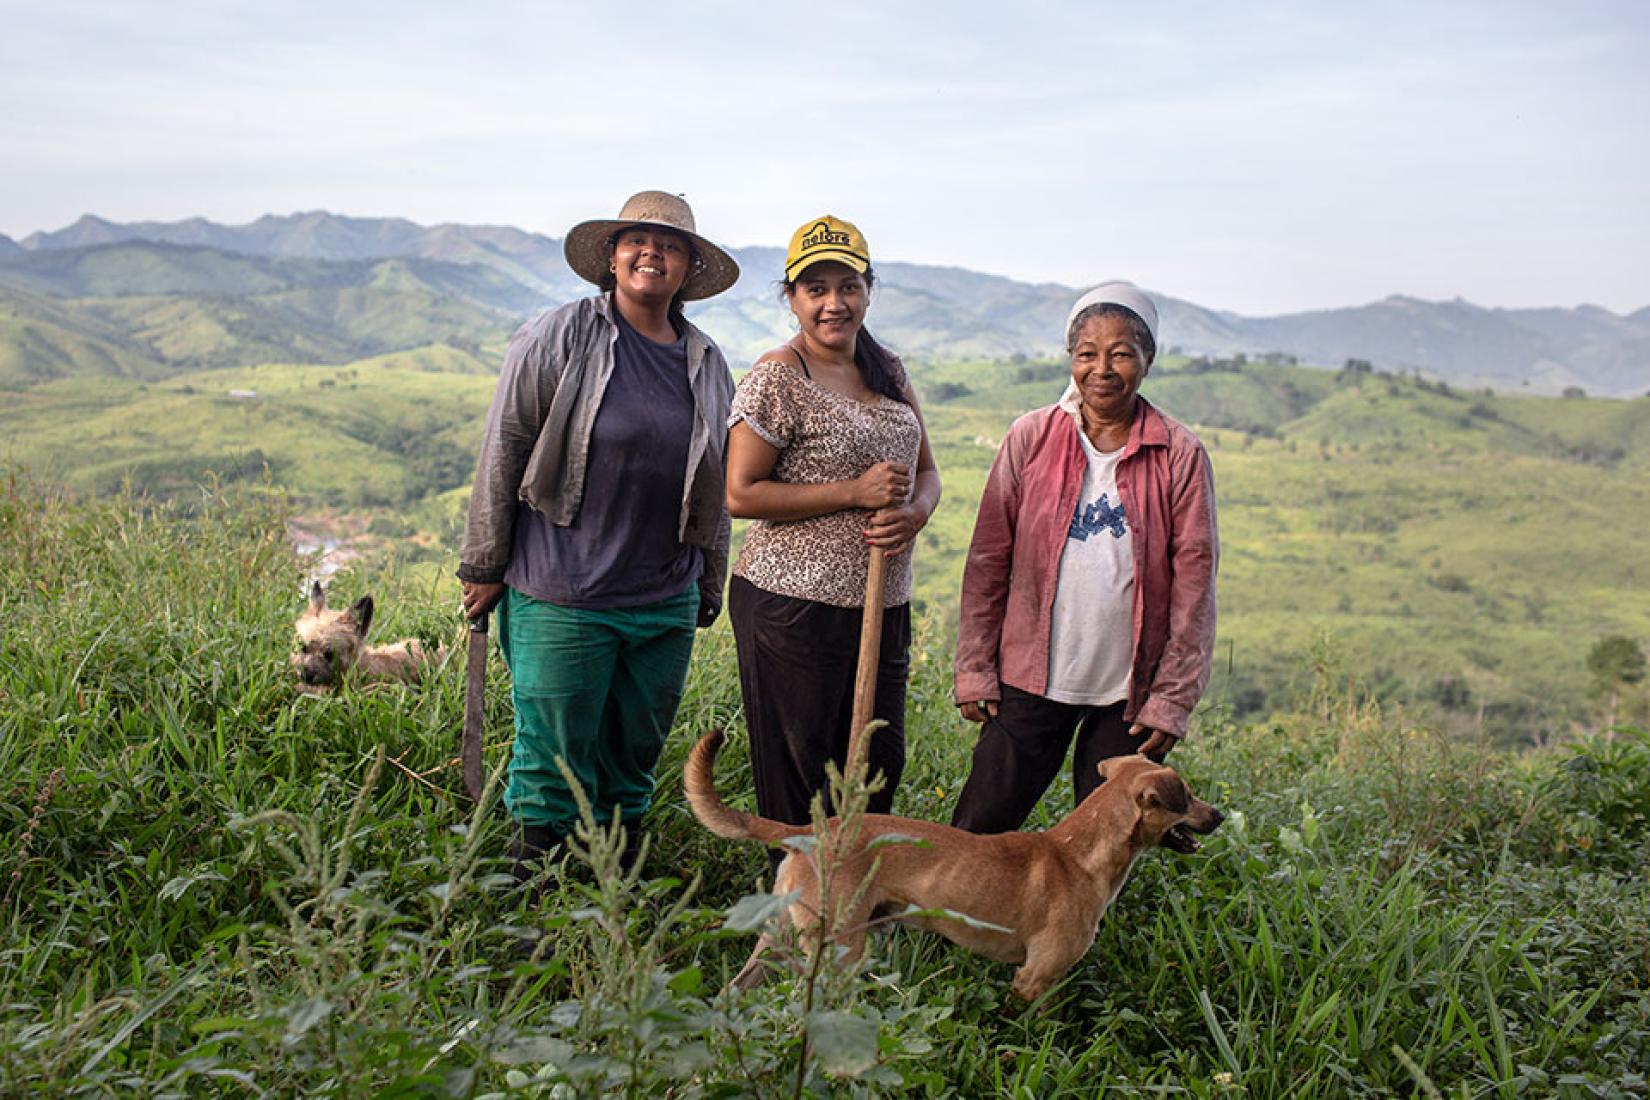 Janete Dantas, no centro, com a mãe, Maria Nilda, à direita, e sua irmã, Mayla, à esquerda, na fazenda da família. Foto: Lianne Milton